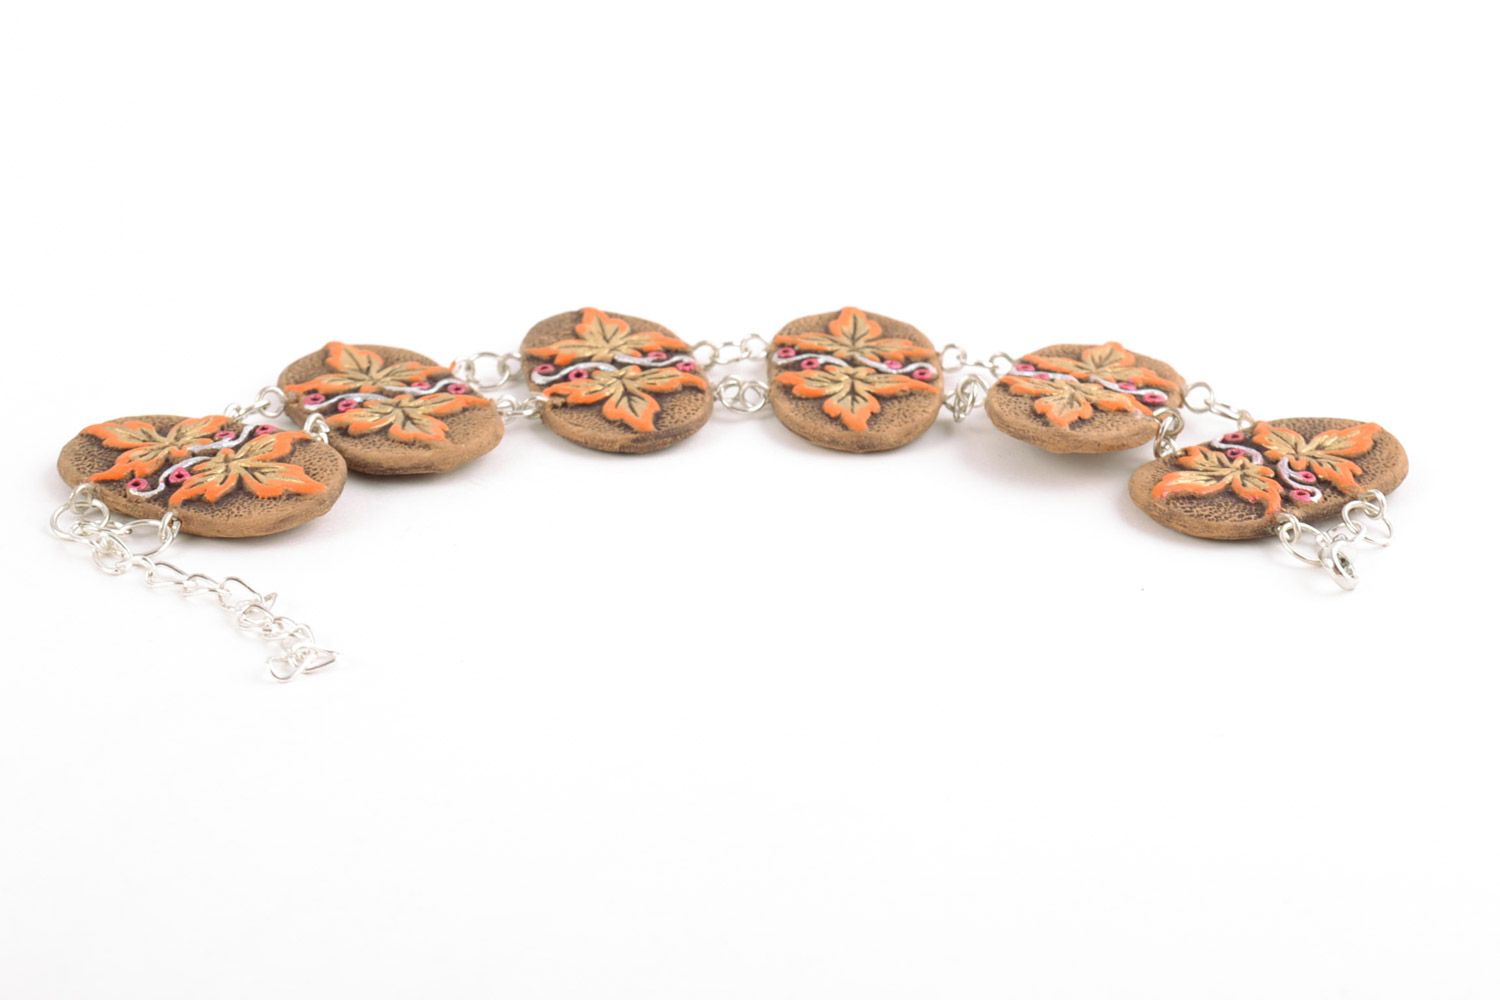 Глиняный браслет на цепочке осенний с росписью акриловыми красками ручной работы фото 4